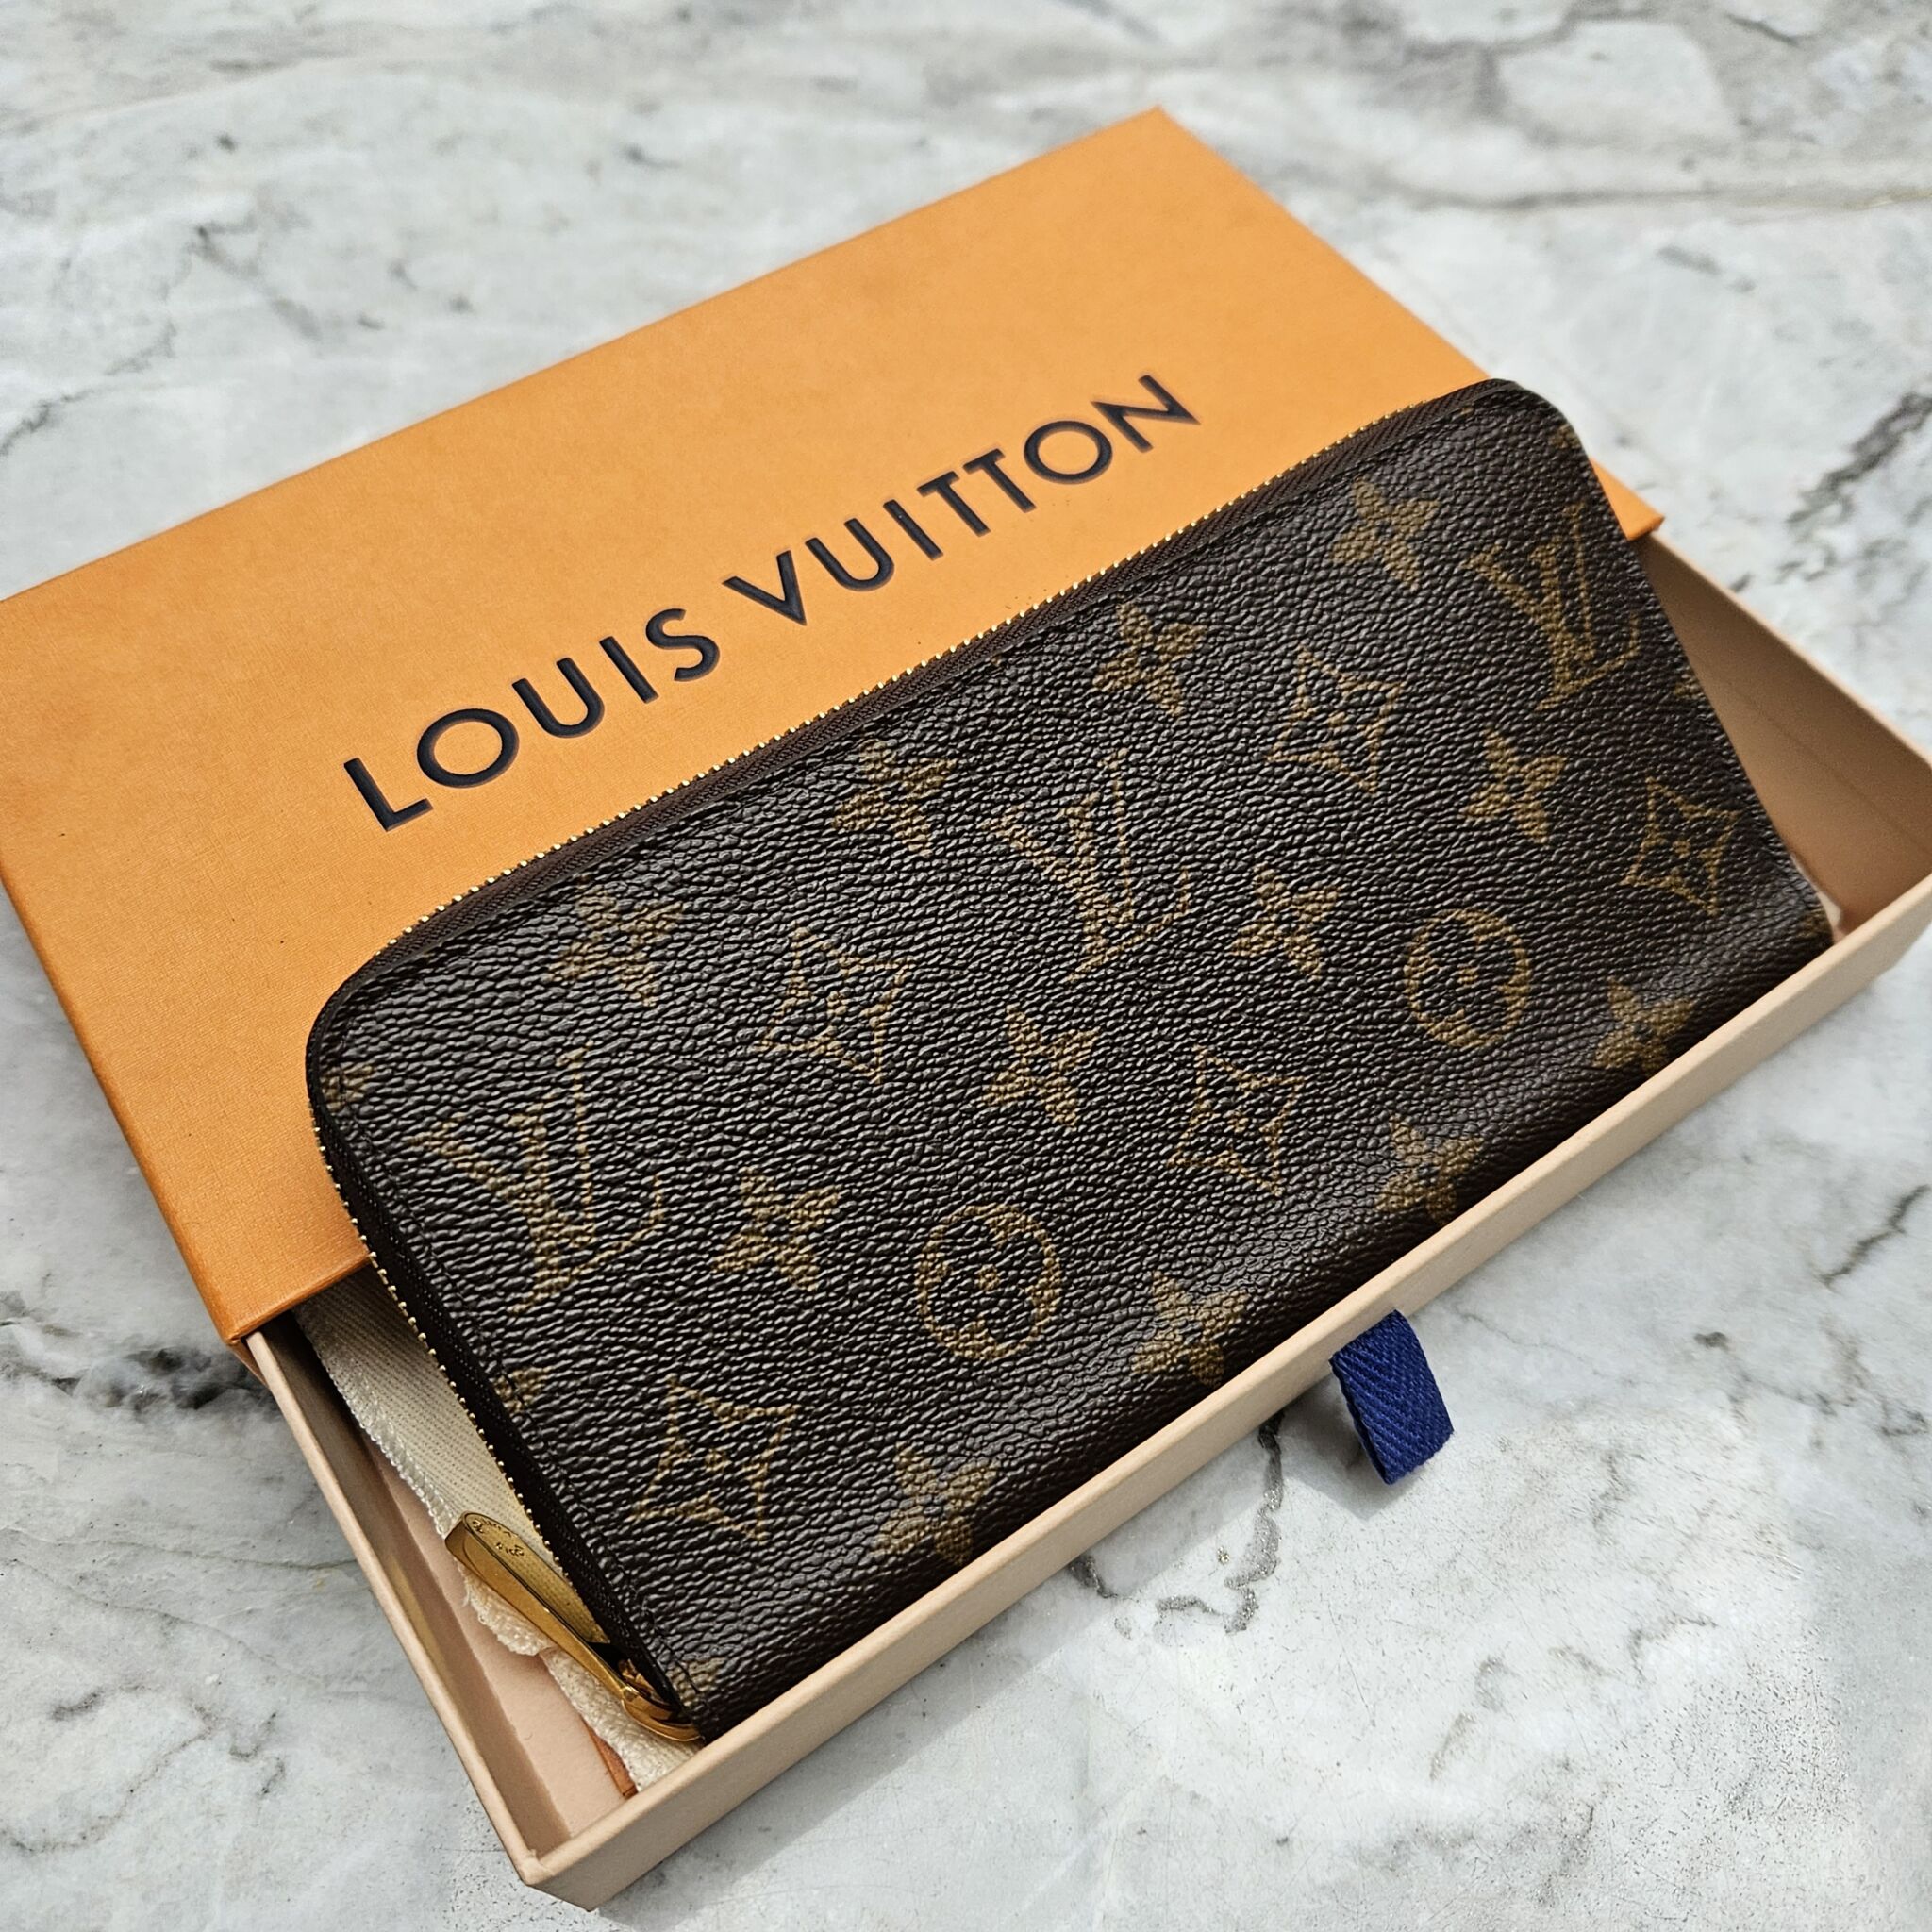 Louis Vuitton - Zippy Coin Purse Vertical Unboxing!@Lux_Tech